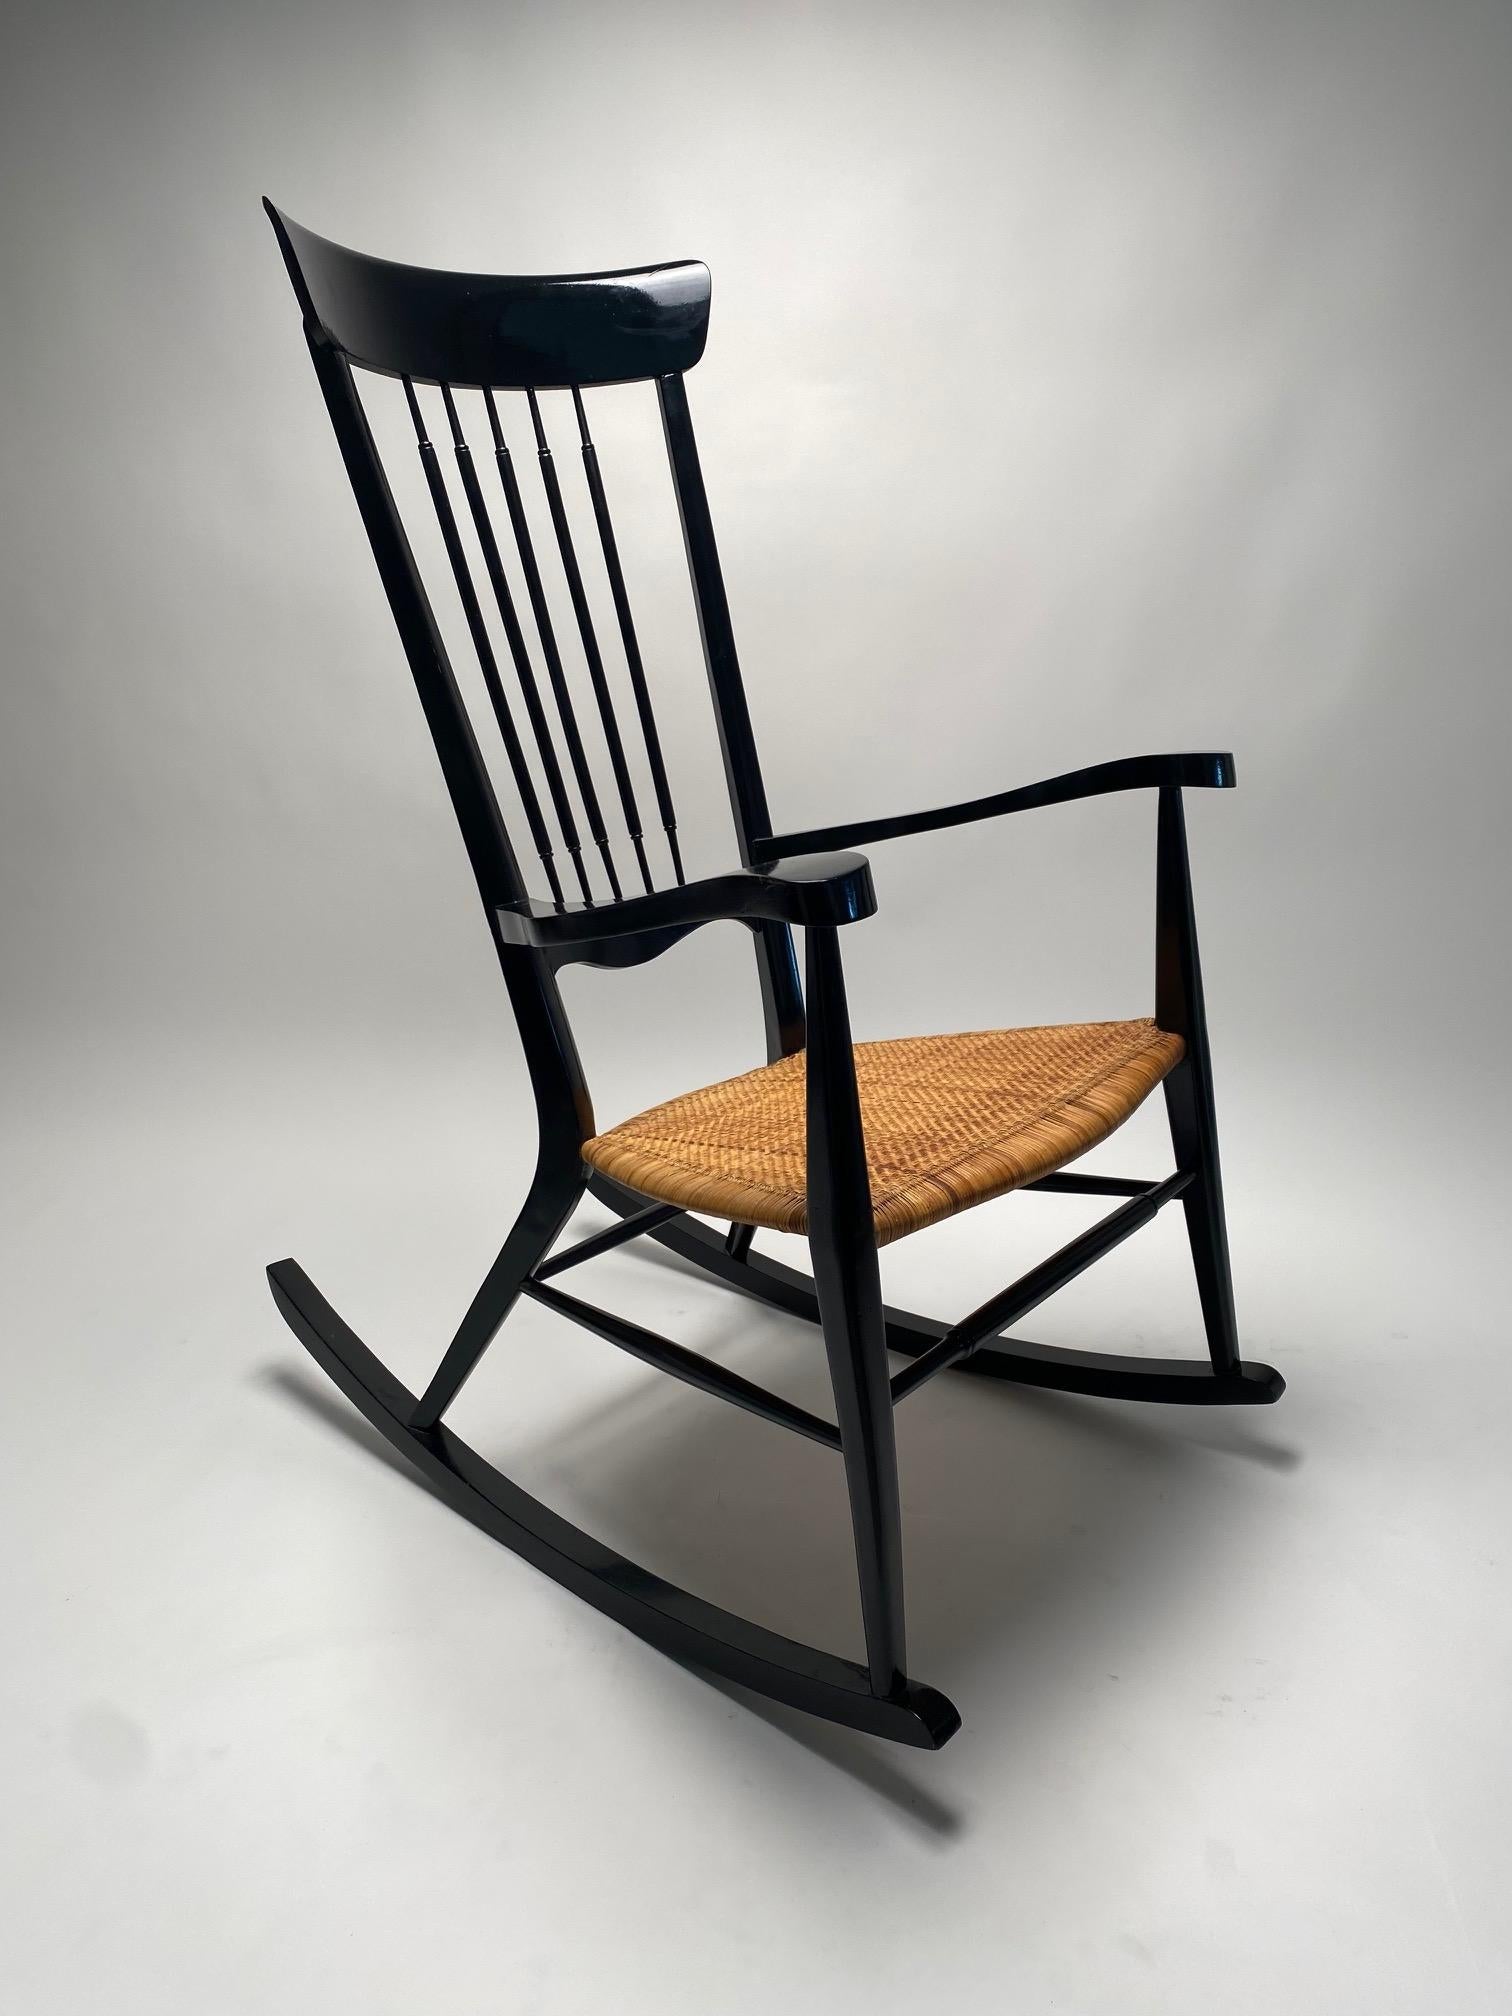 Seltener italienischer Mid-Century-Schaukelstuhl im Stil von Paolo Buffa, hergestellt in den 1950er Jahren.

Dieser Schaukelstuhl aus schwarz lackiertem Holz mit einer Sitzfläche aus geflochtenem Stroh ist ein ikonisches und äußerst raffiniertes